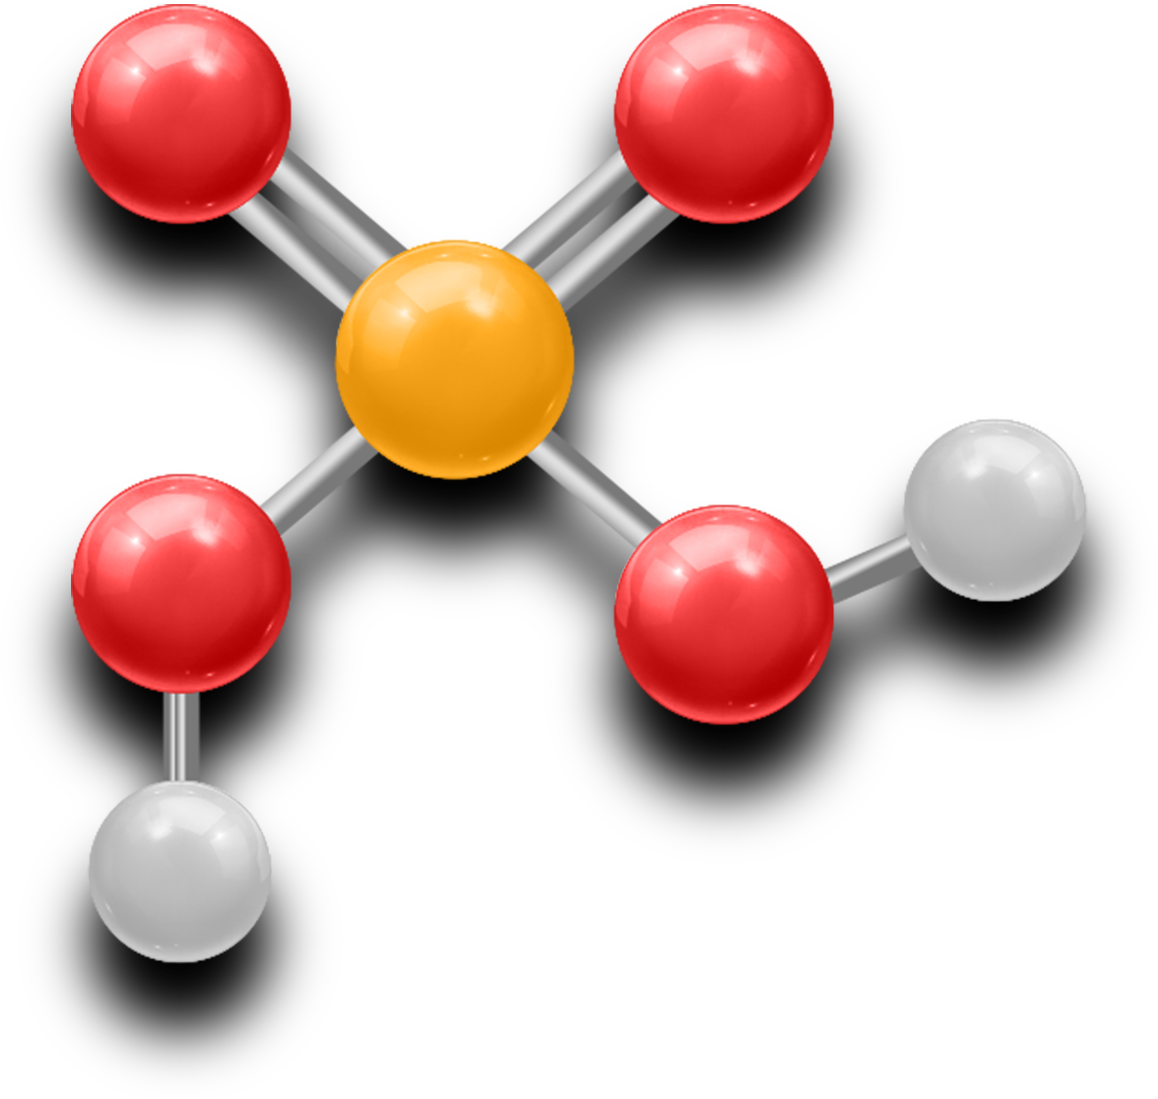 sulfuric acid uses